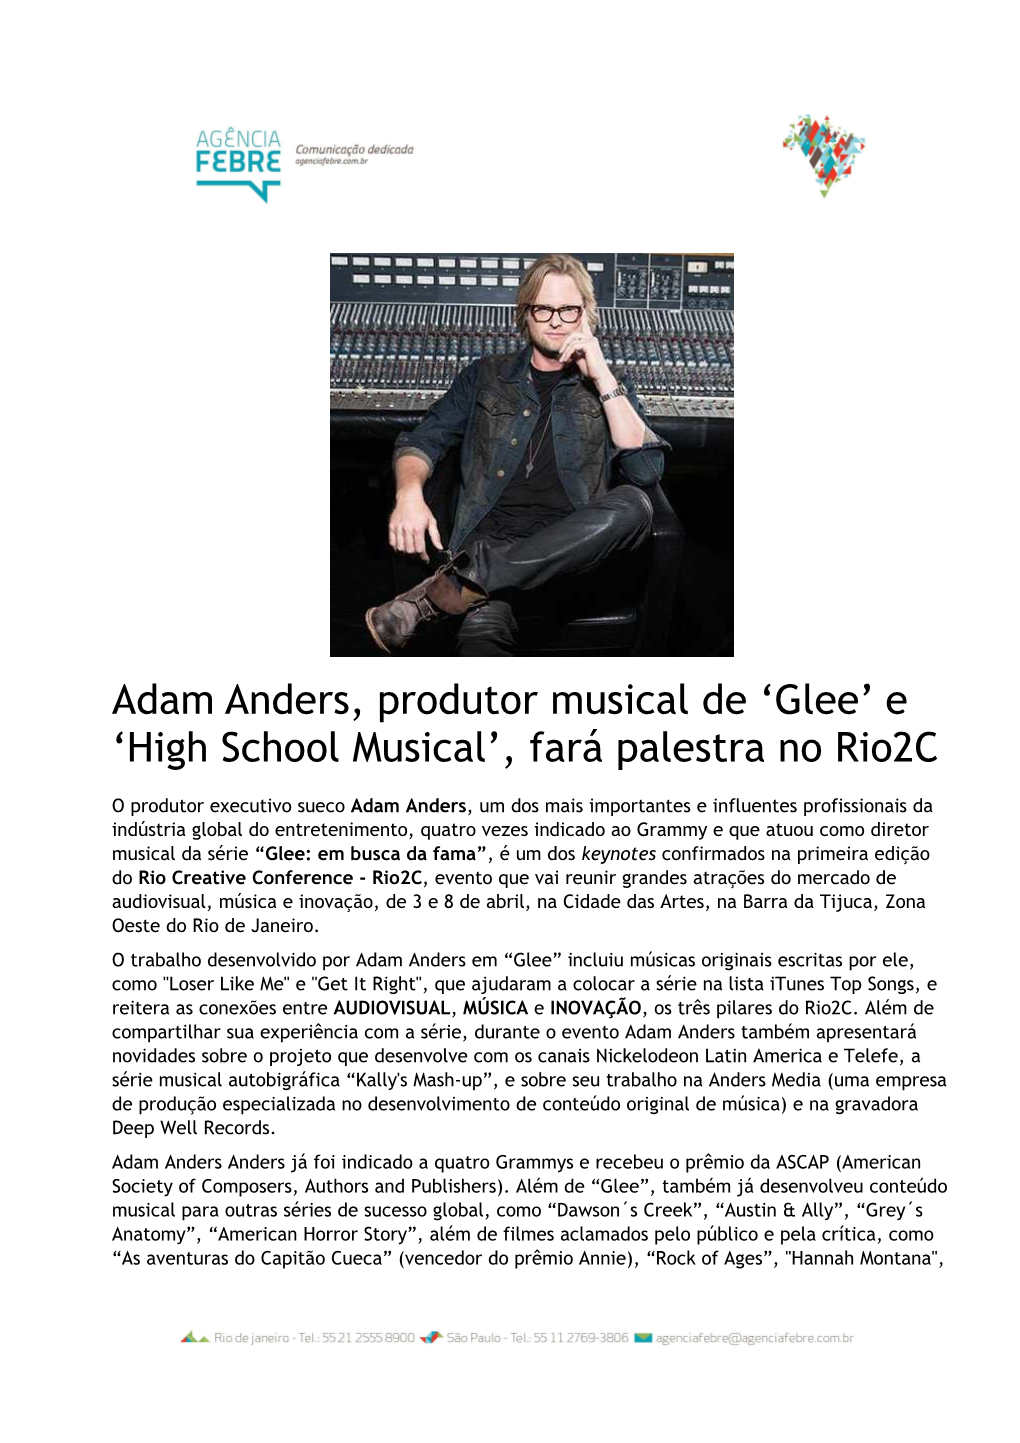 Adam Anders, Produtor Musical De ‘Glee’ E ‘High School Musical’, Fará Palestra No Rio2c